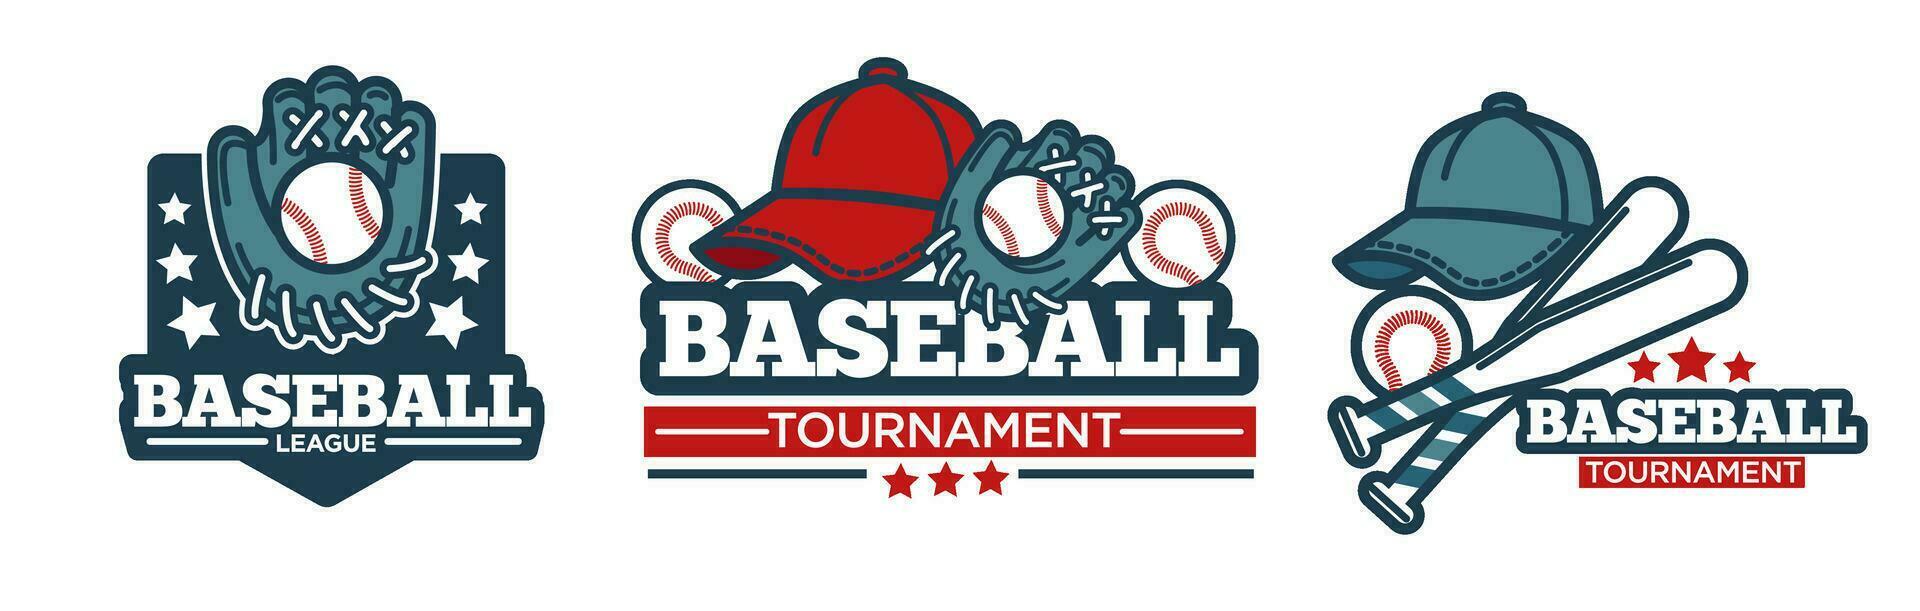 Tournament of baseball teams, league icon vector